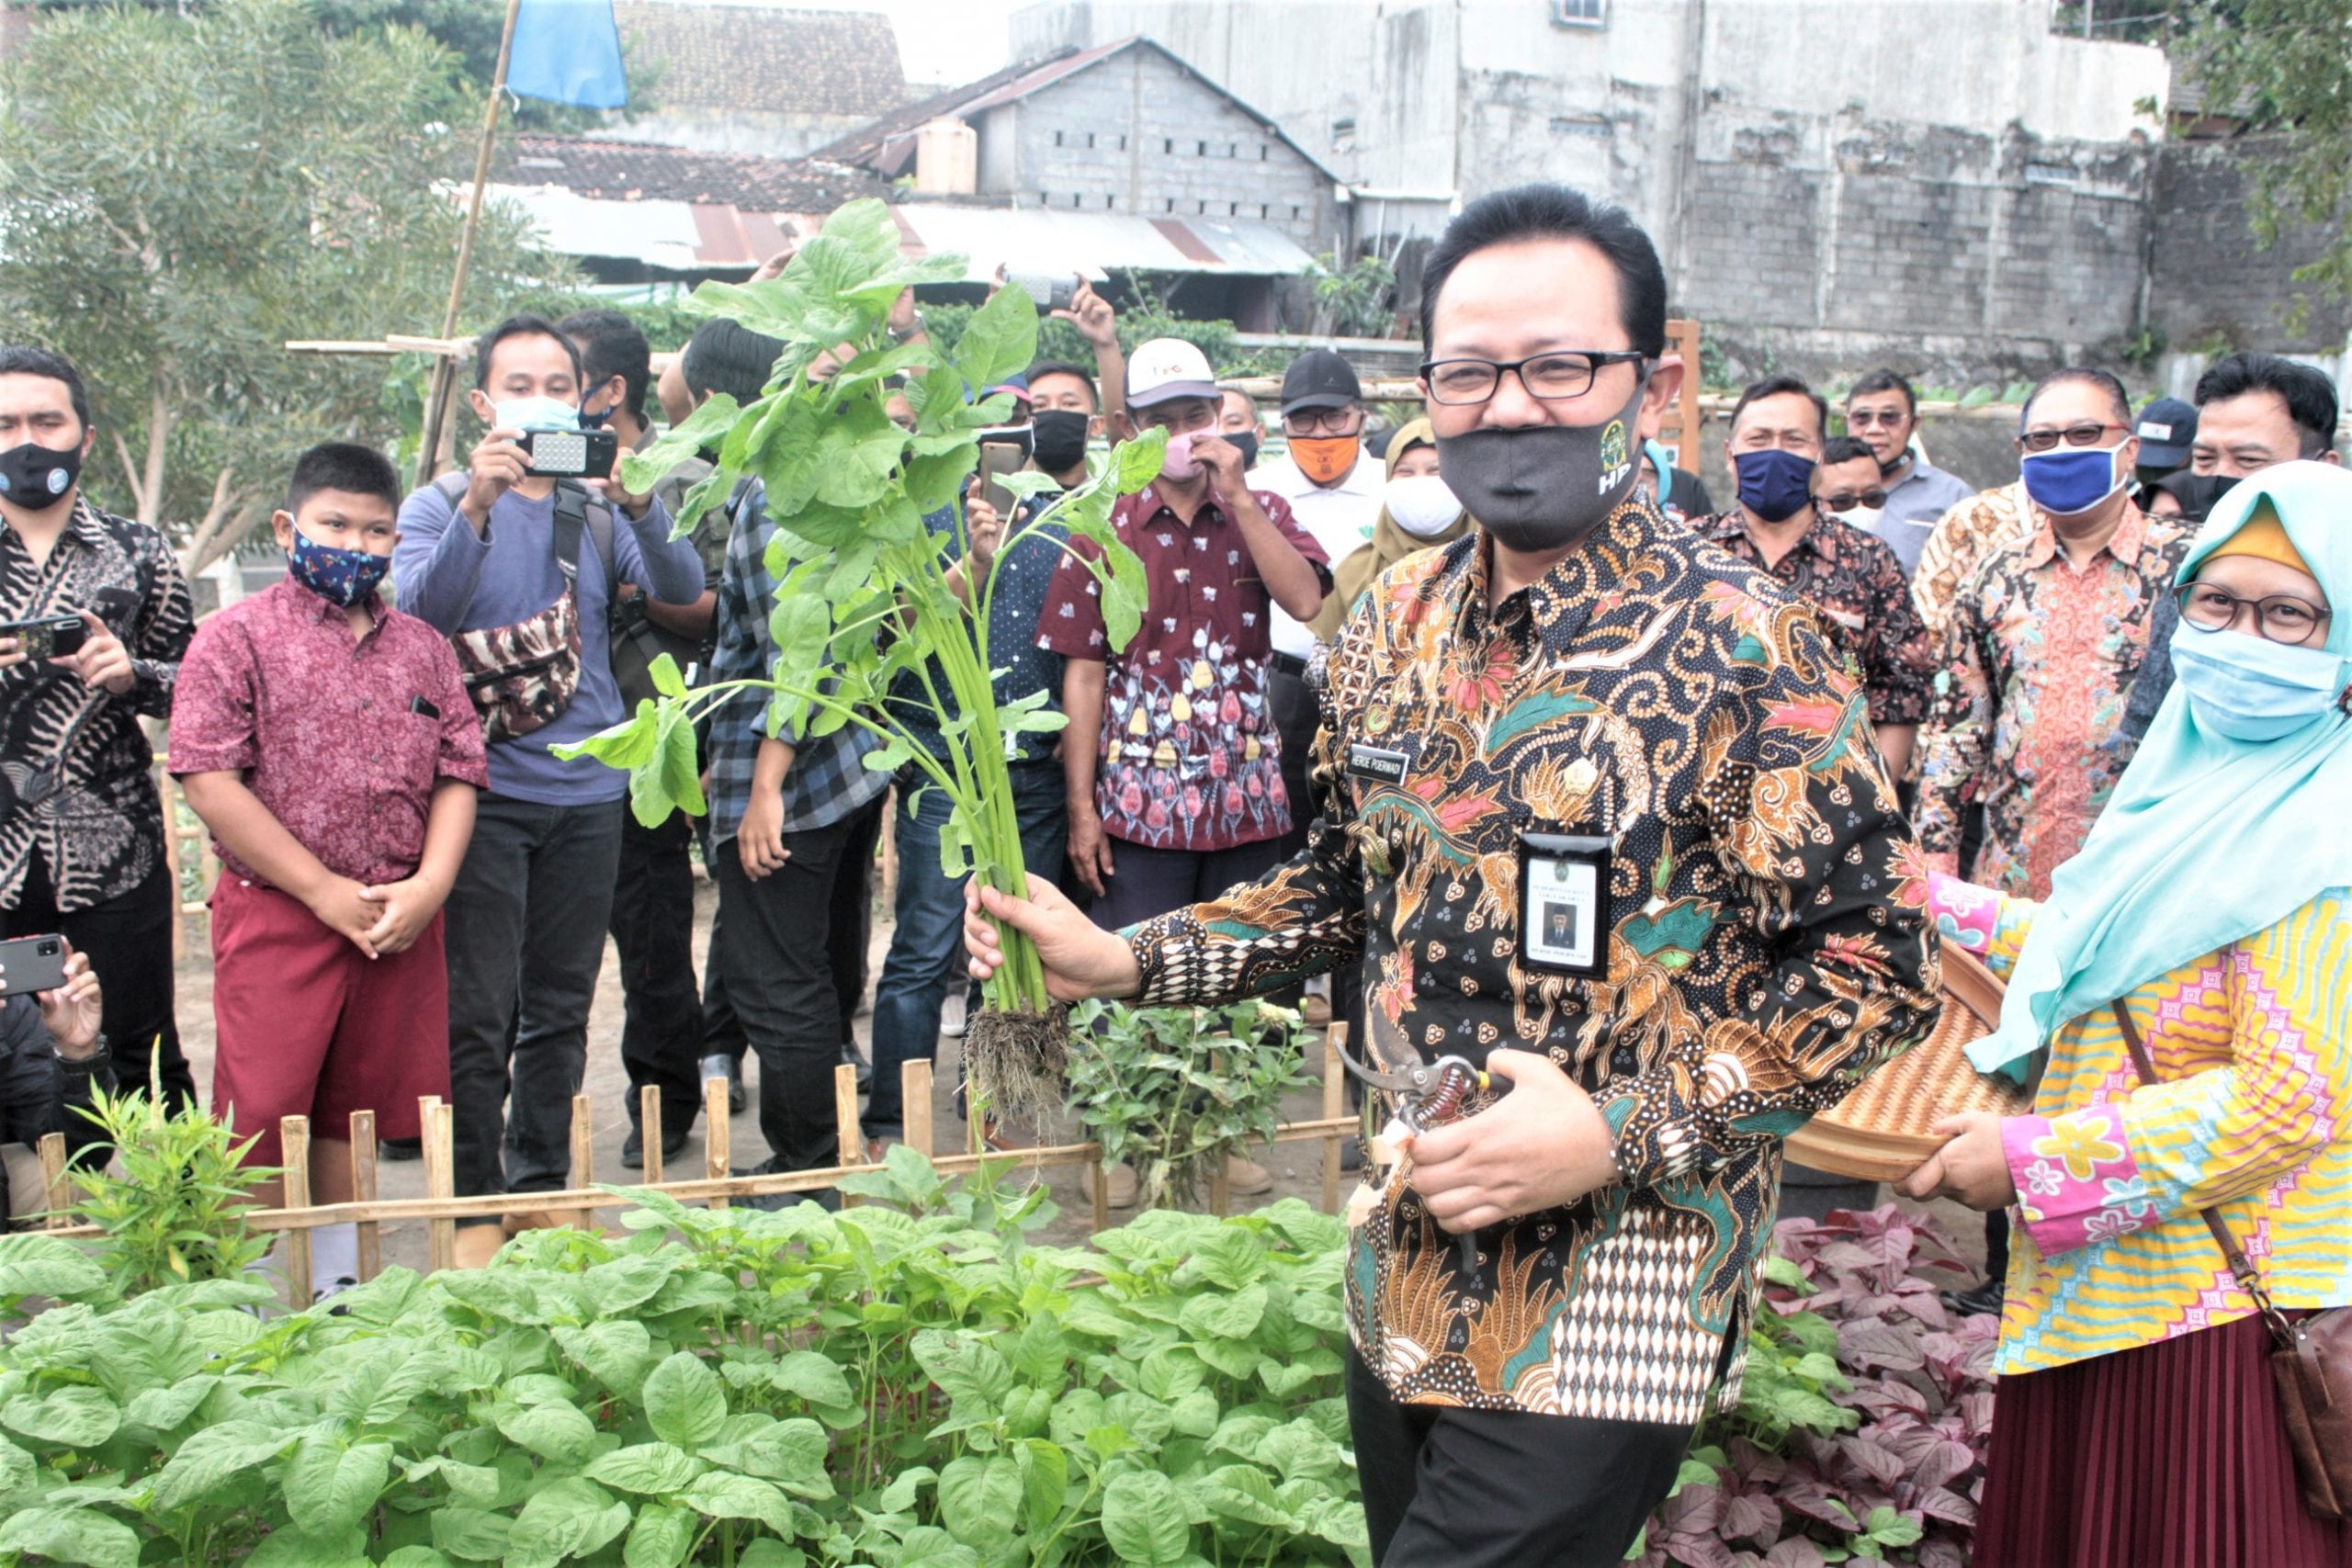 Antusiasme warga masyarakat serta Wakil Walikota Yogyakarta yang didampingi beberapa pejabat terkait sedang menunjukkan hasil tanam panen bayam.